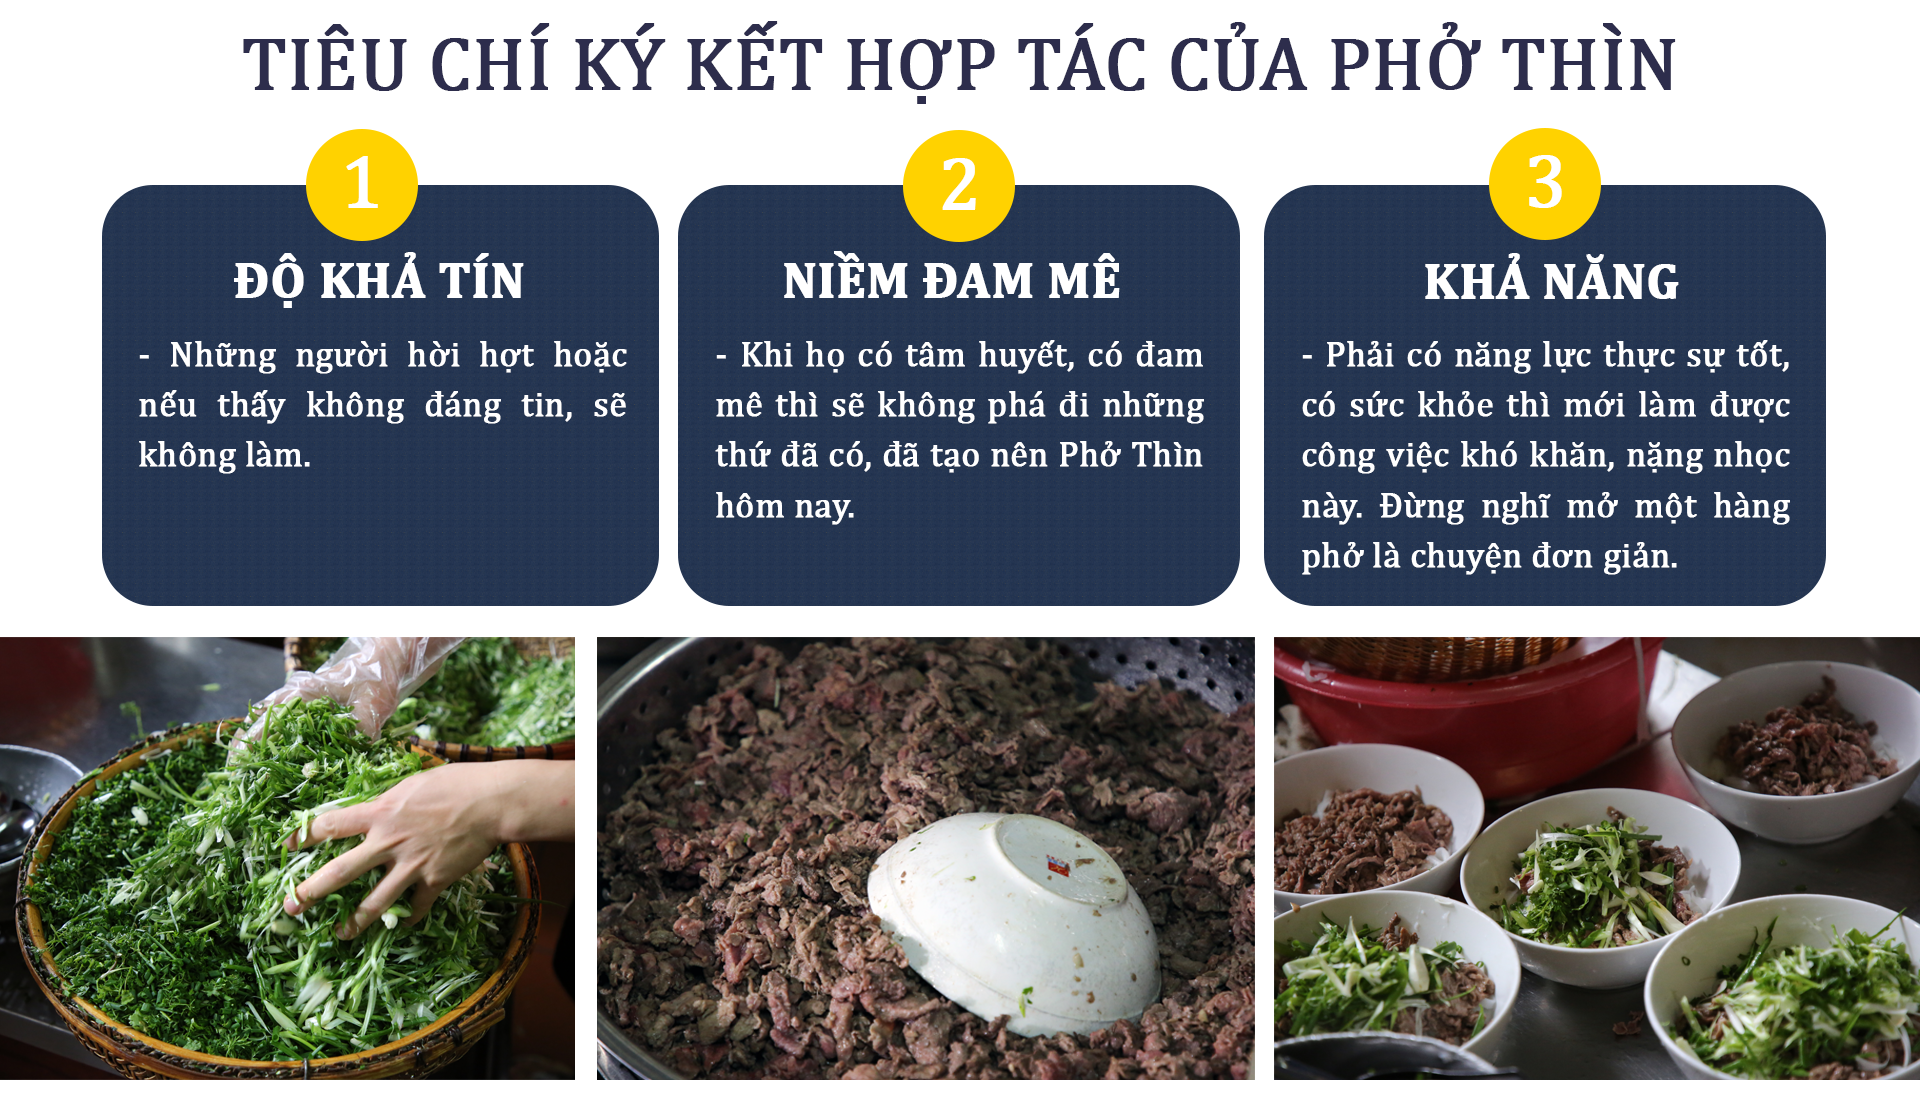 Ông chủ Phở Thìn, Hà Nội: Nhiều di sản ẩm thực của chúng ta đã biến mất vĩnh viễn - ảnh 6